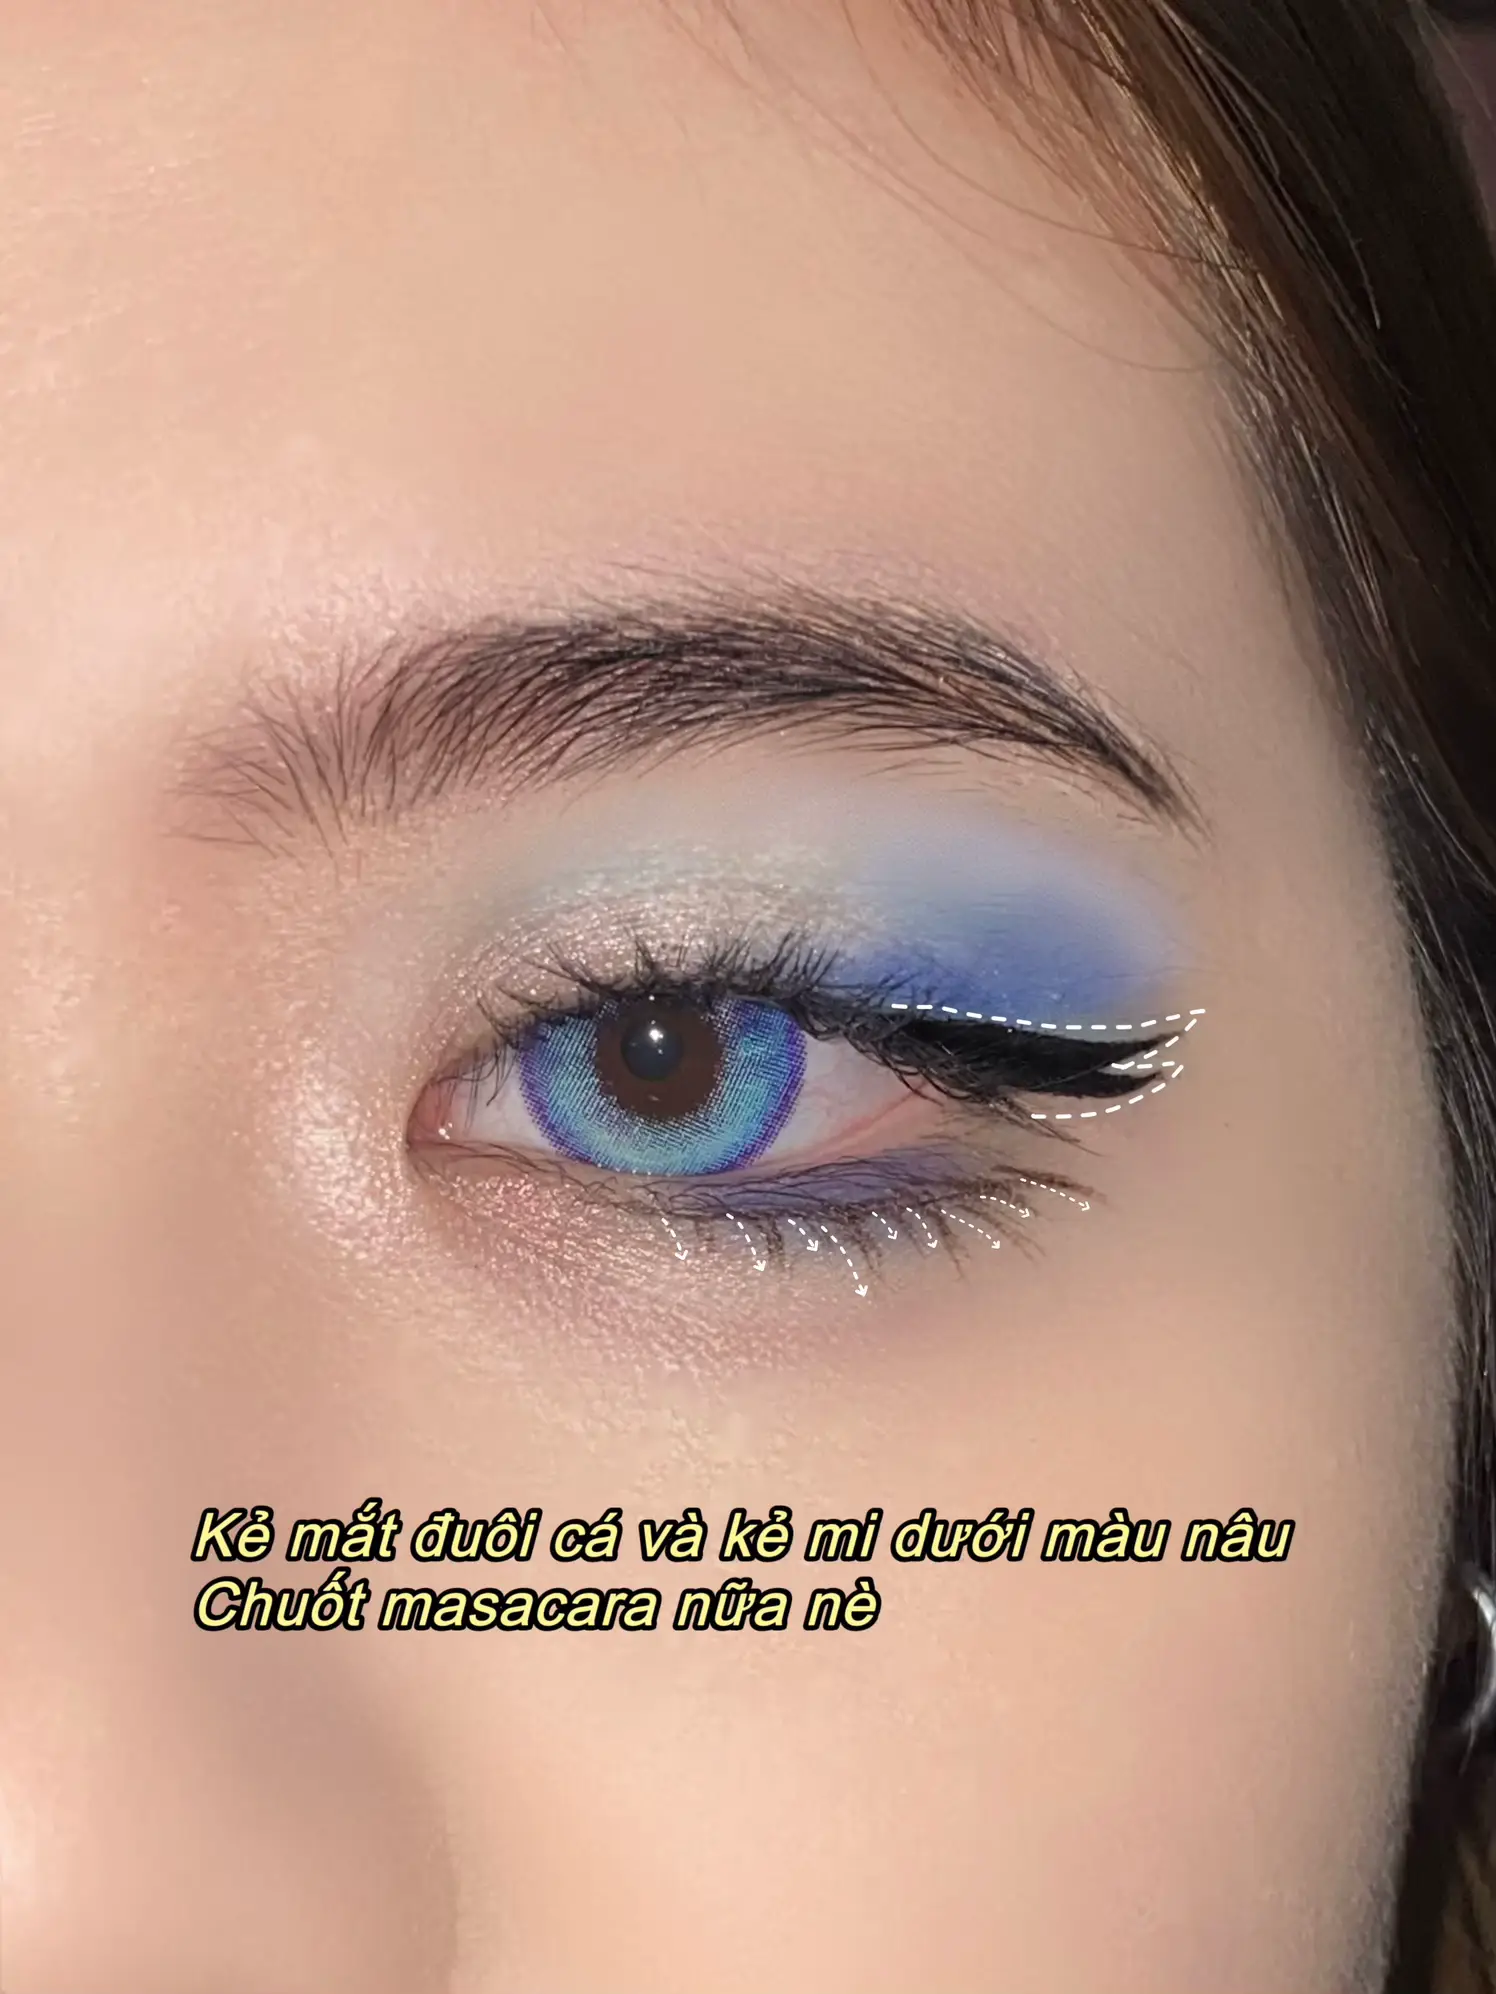 Makeup mắt tone xanh biển | Bộ sưu tập do Manhpotato đăng | Lemon8